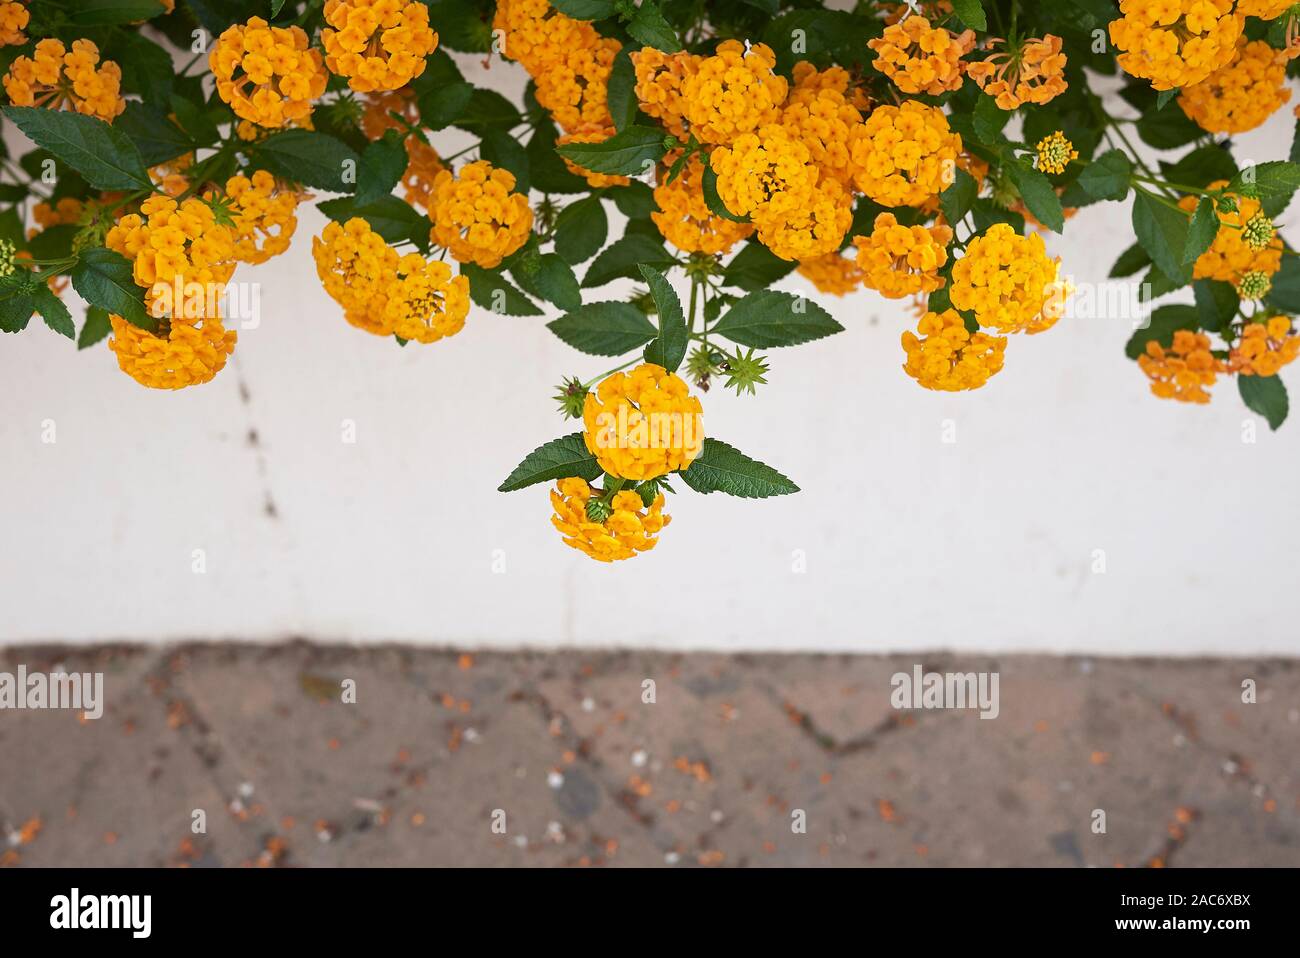 yellow flowers of Lantana camara shrub Stock Photo